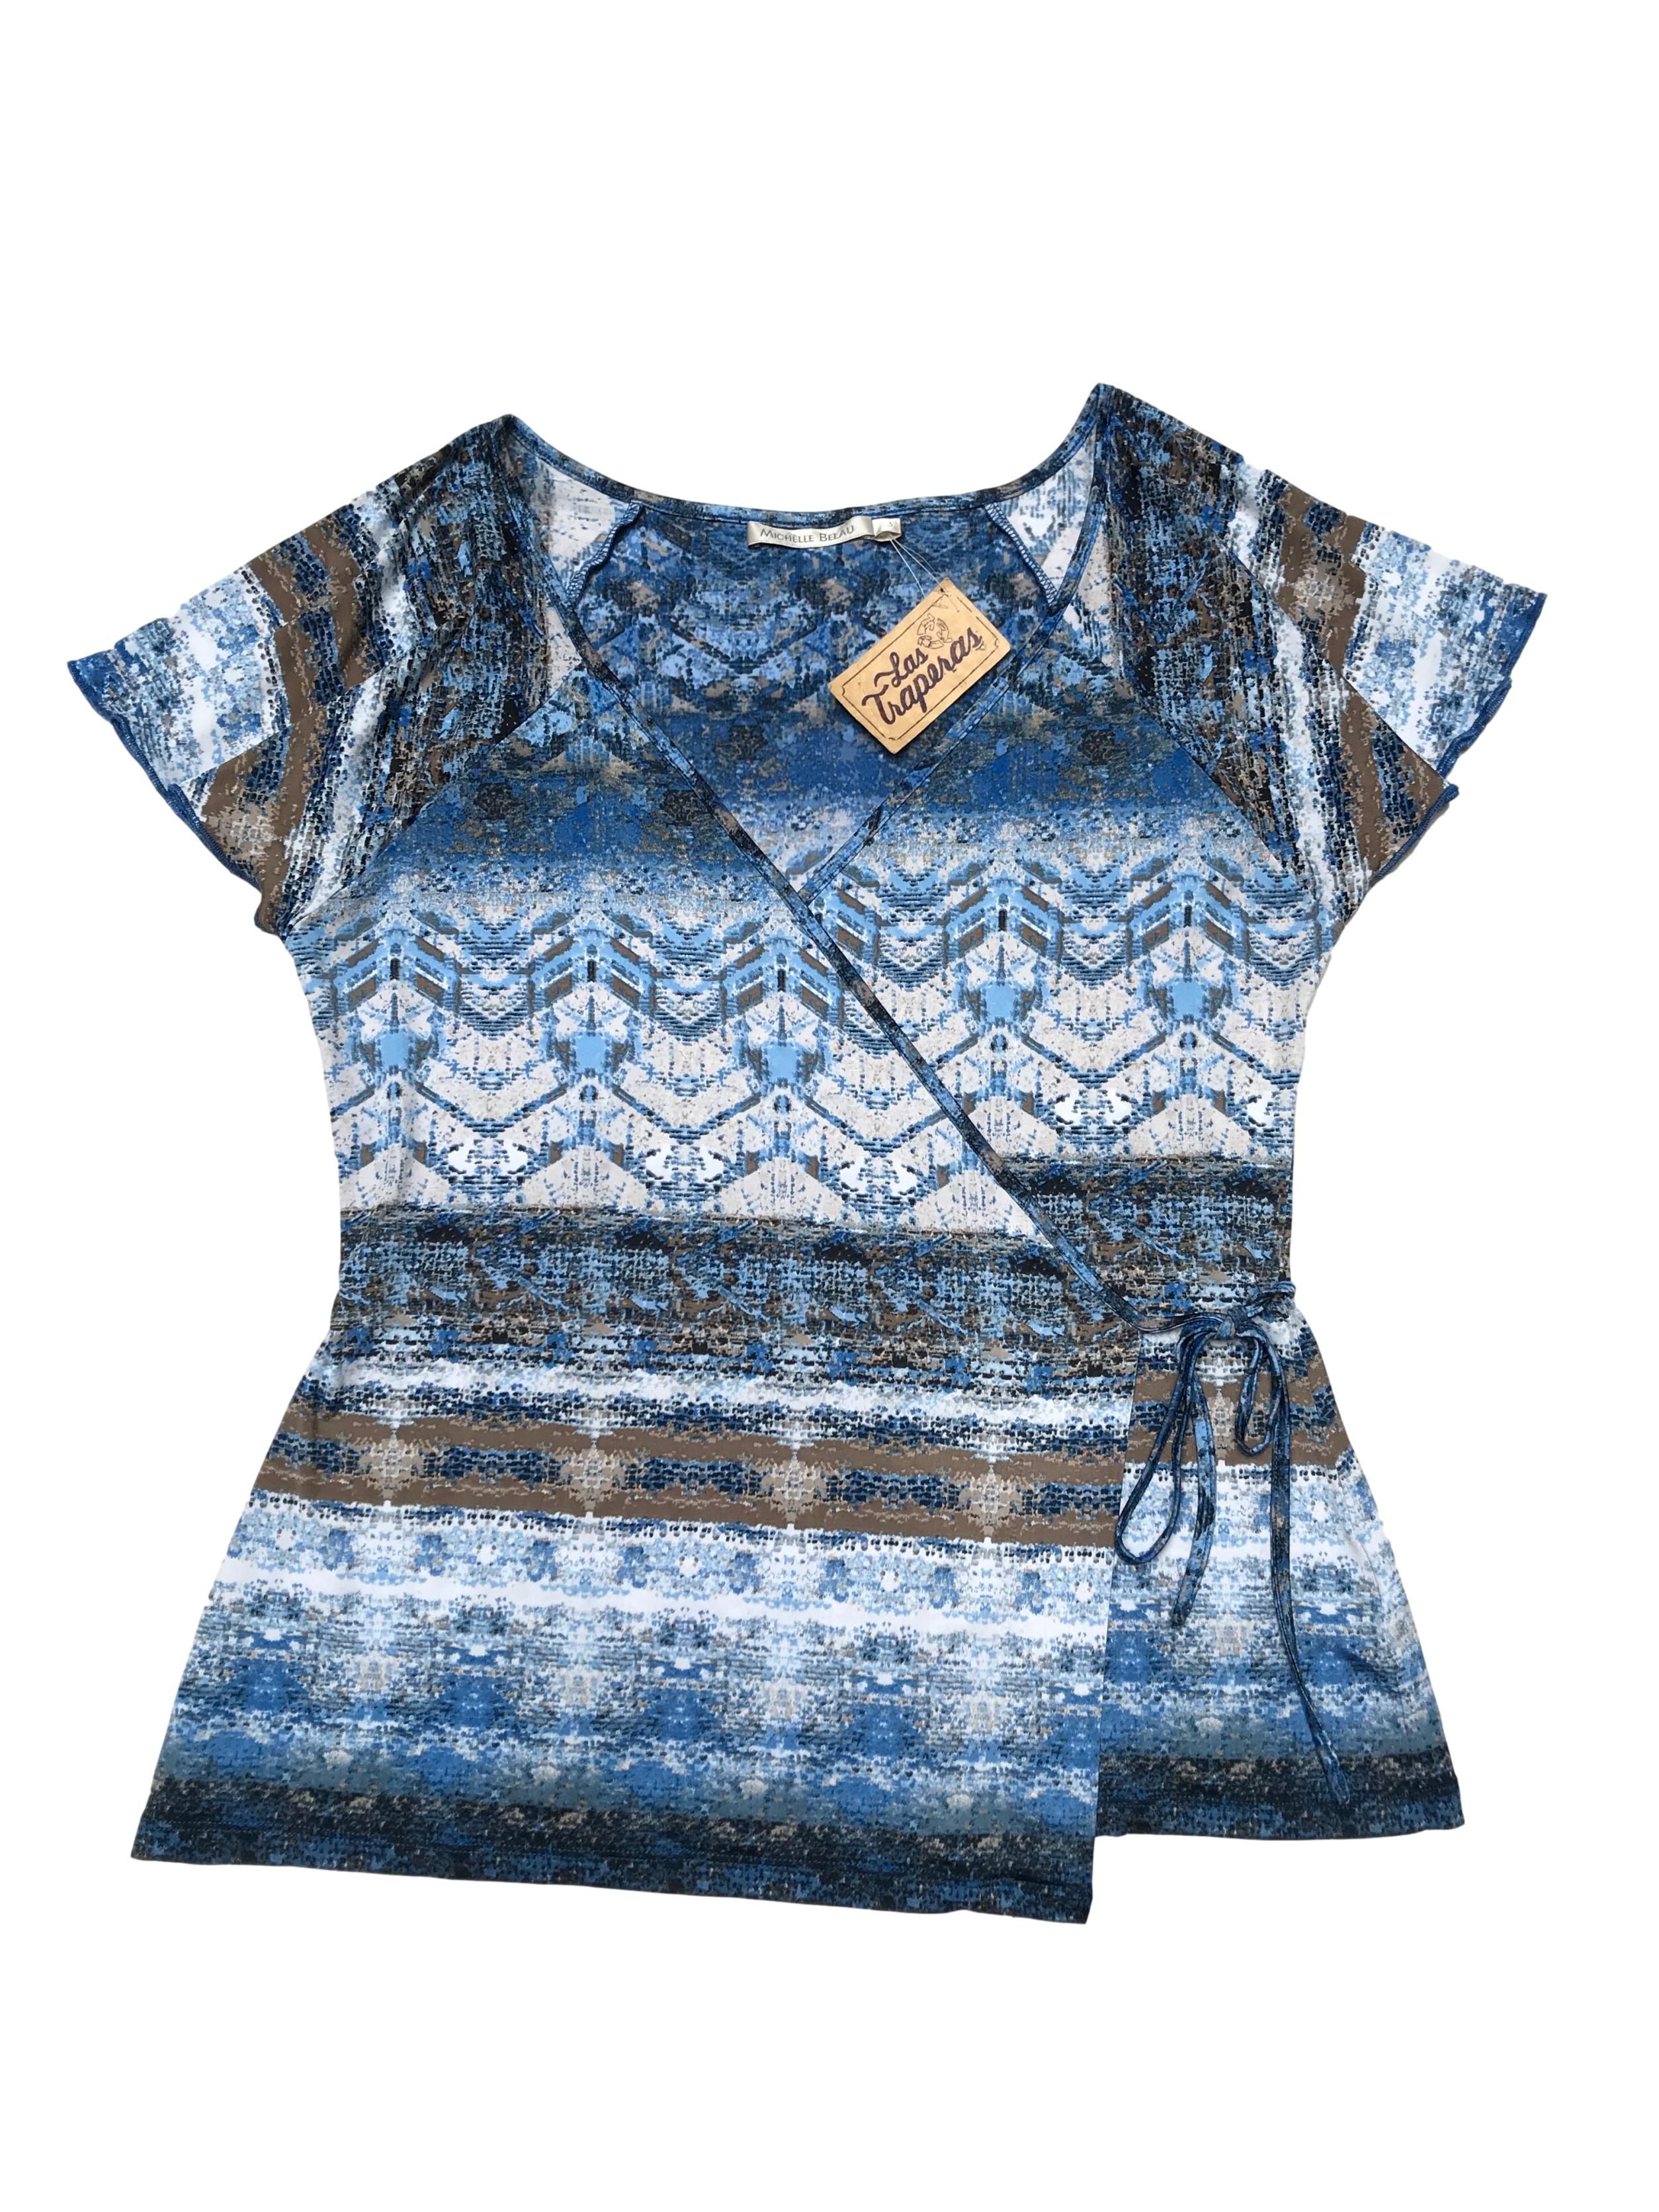 Blusa Michelle Belau envolvente, de tela stretch con estampado azul, blanco y marrón. Precio original S/ 160